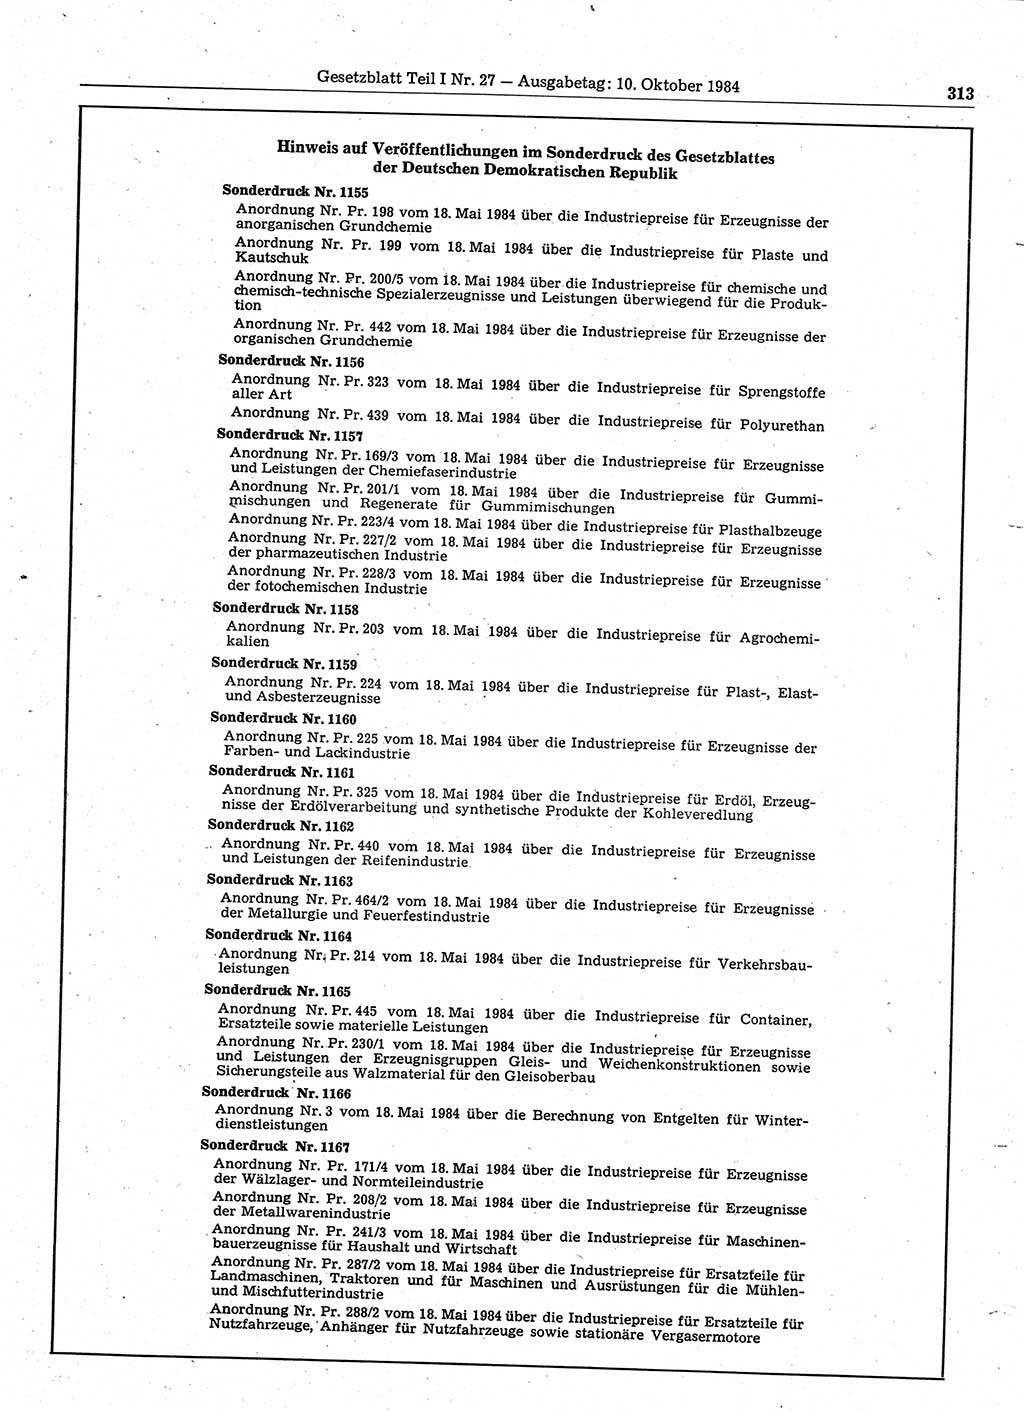 Gesetzblatt (GBl.) der Deutschen Demokratischen Republik (DDR) Teil Ⅰ 1984, Seite 313 (GBl. DDR Ⅰ 1984, S. 313)